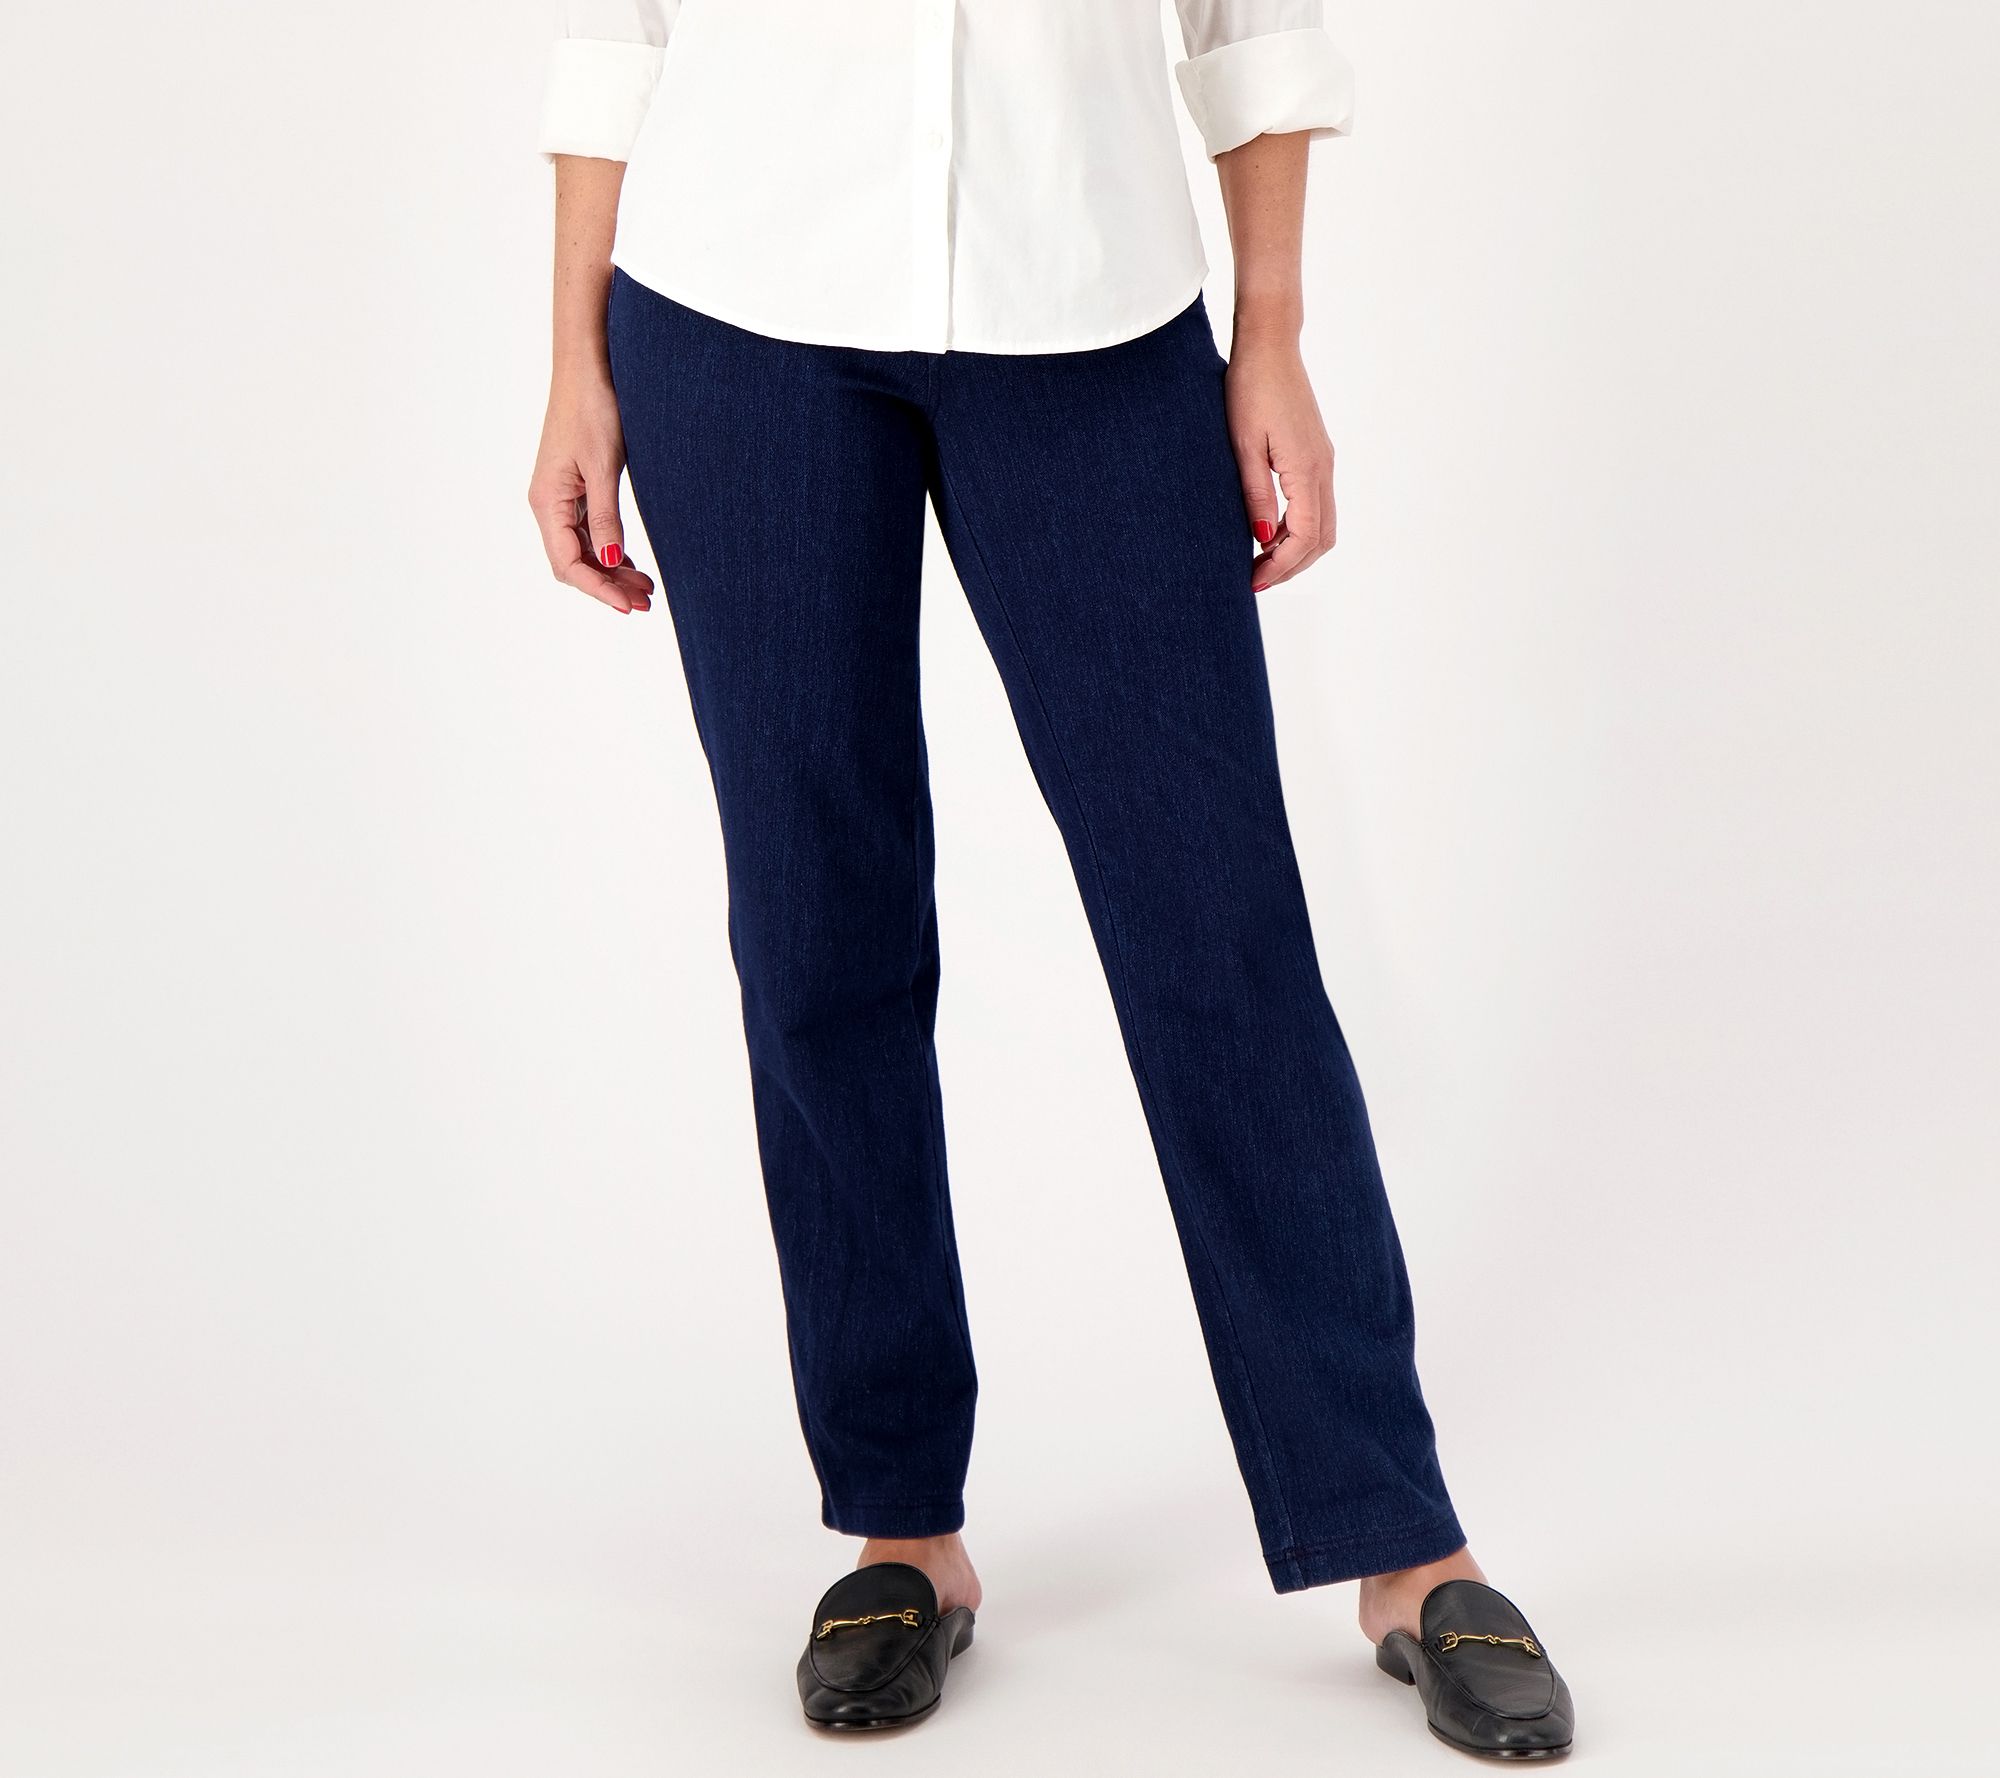 Lands' End Women's Knit Top & Flannel Pants Pajama Set